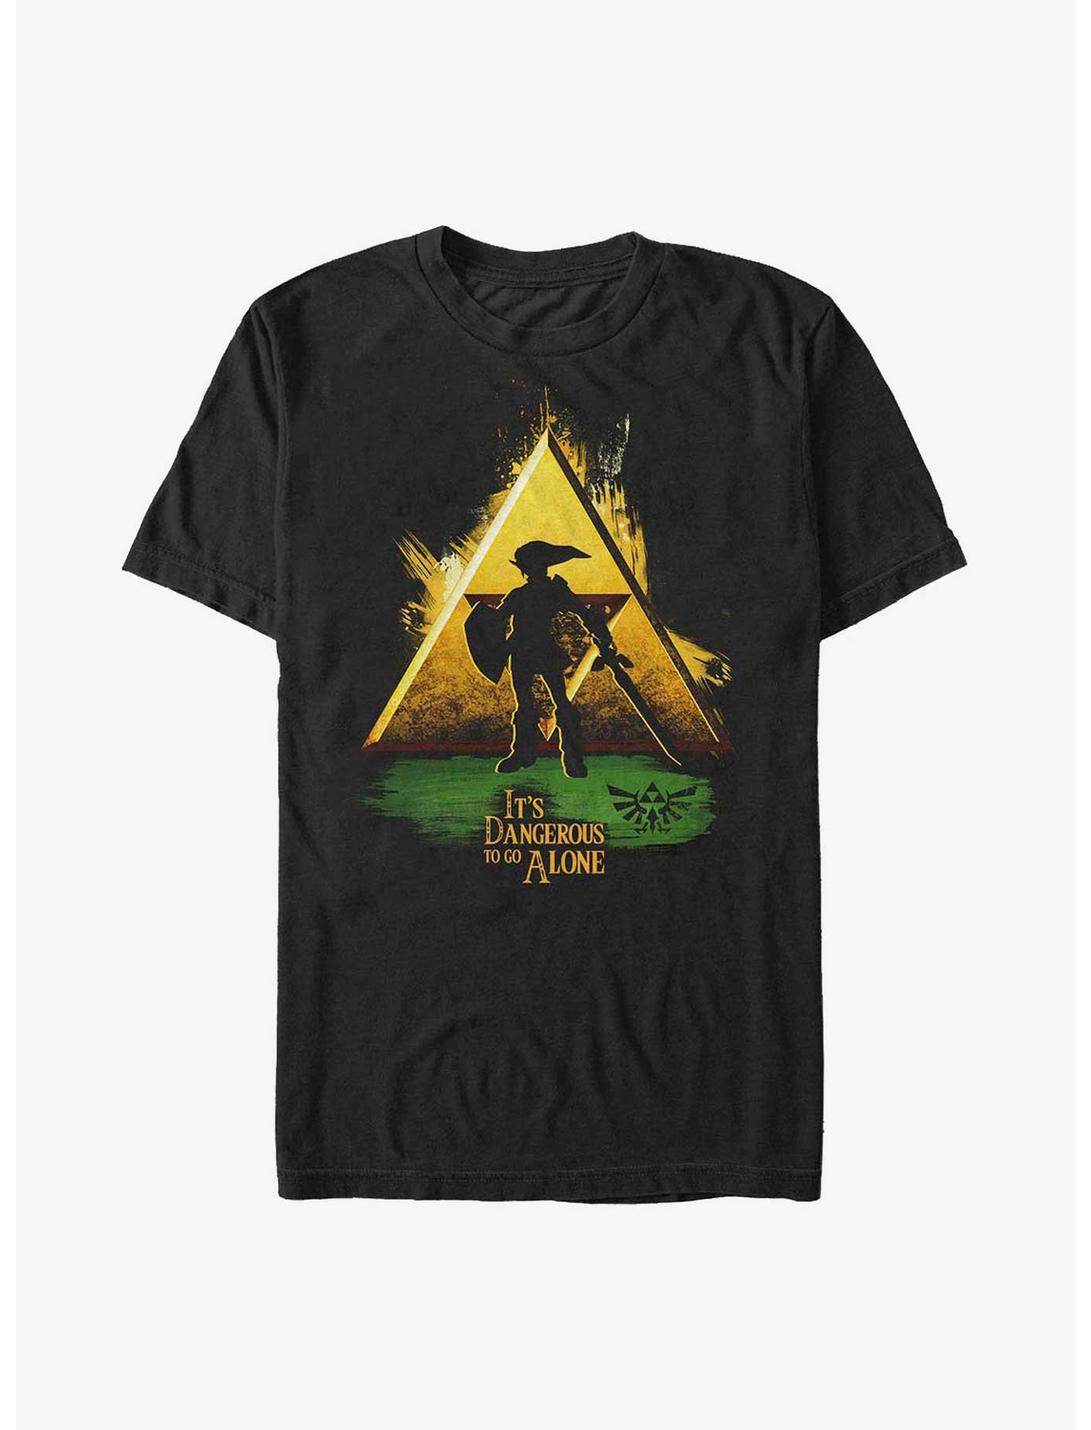 The Legend of Zelda Link Dangerous Alone T-Shirt, BLACK, hi-res